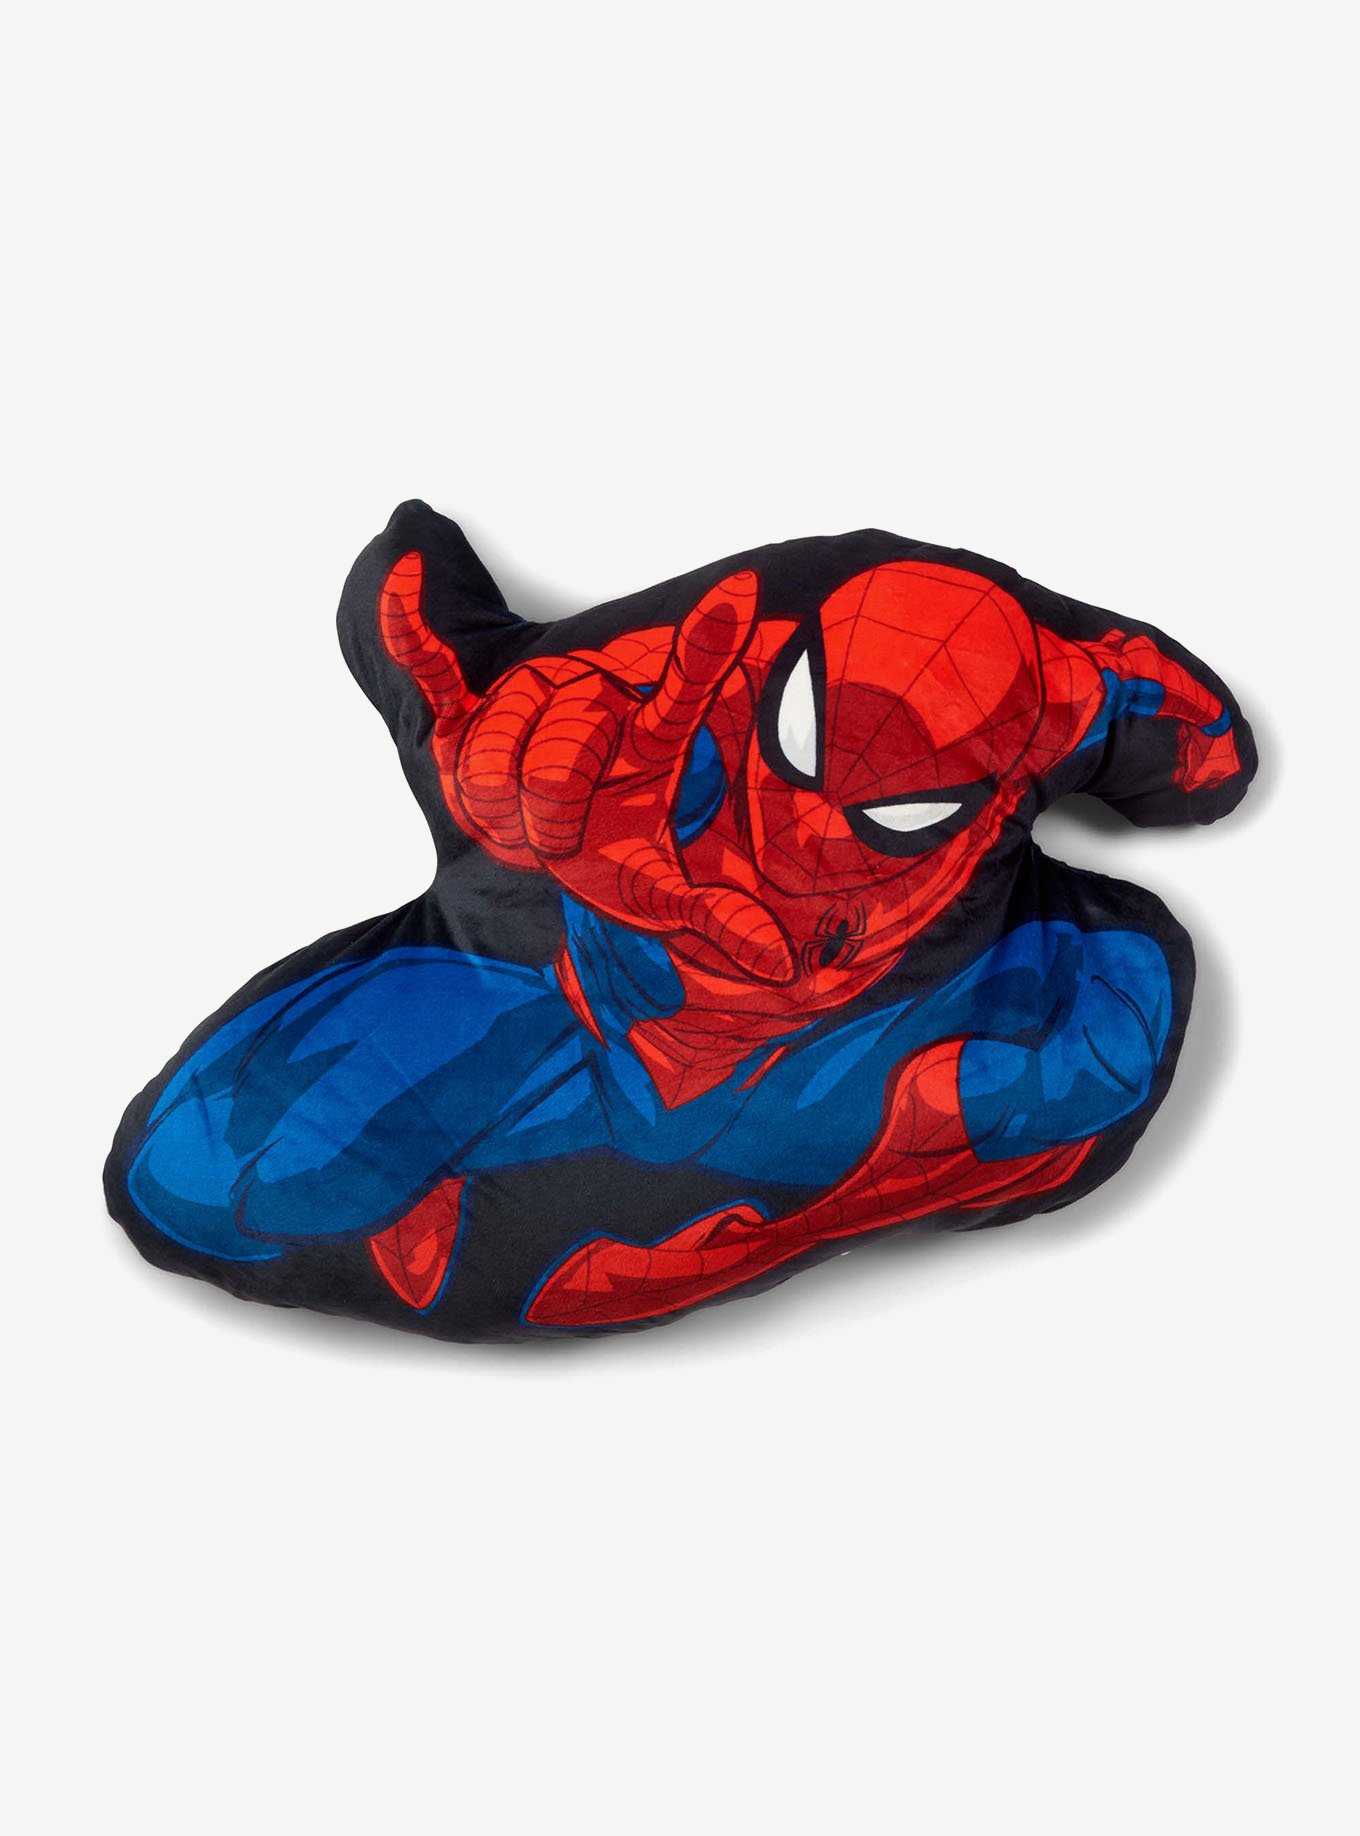 Marvel Web Friend Cloud Pal Pillow, , hi-res